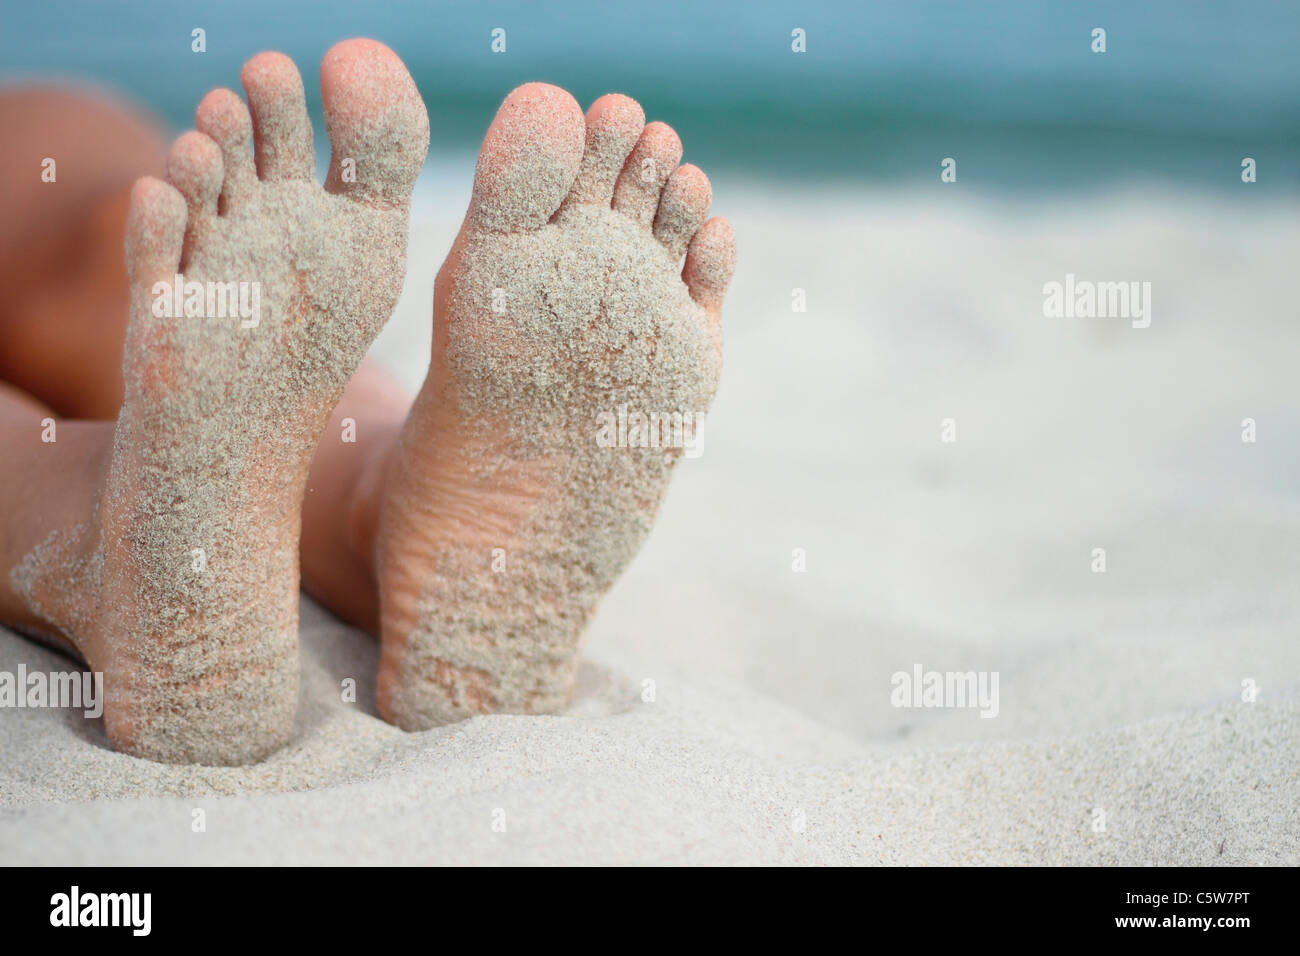 Italie, Sardaigne, personne à la plage de sable, pieds Banque D'Images